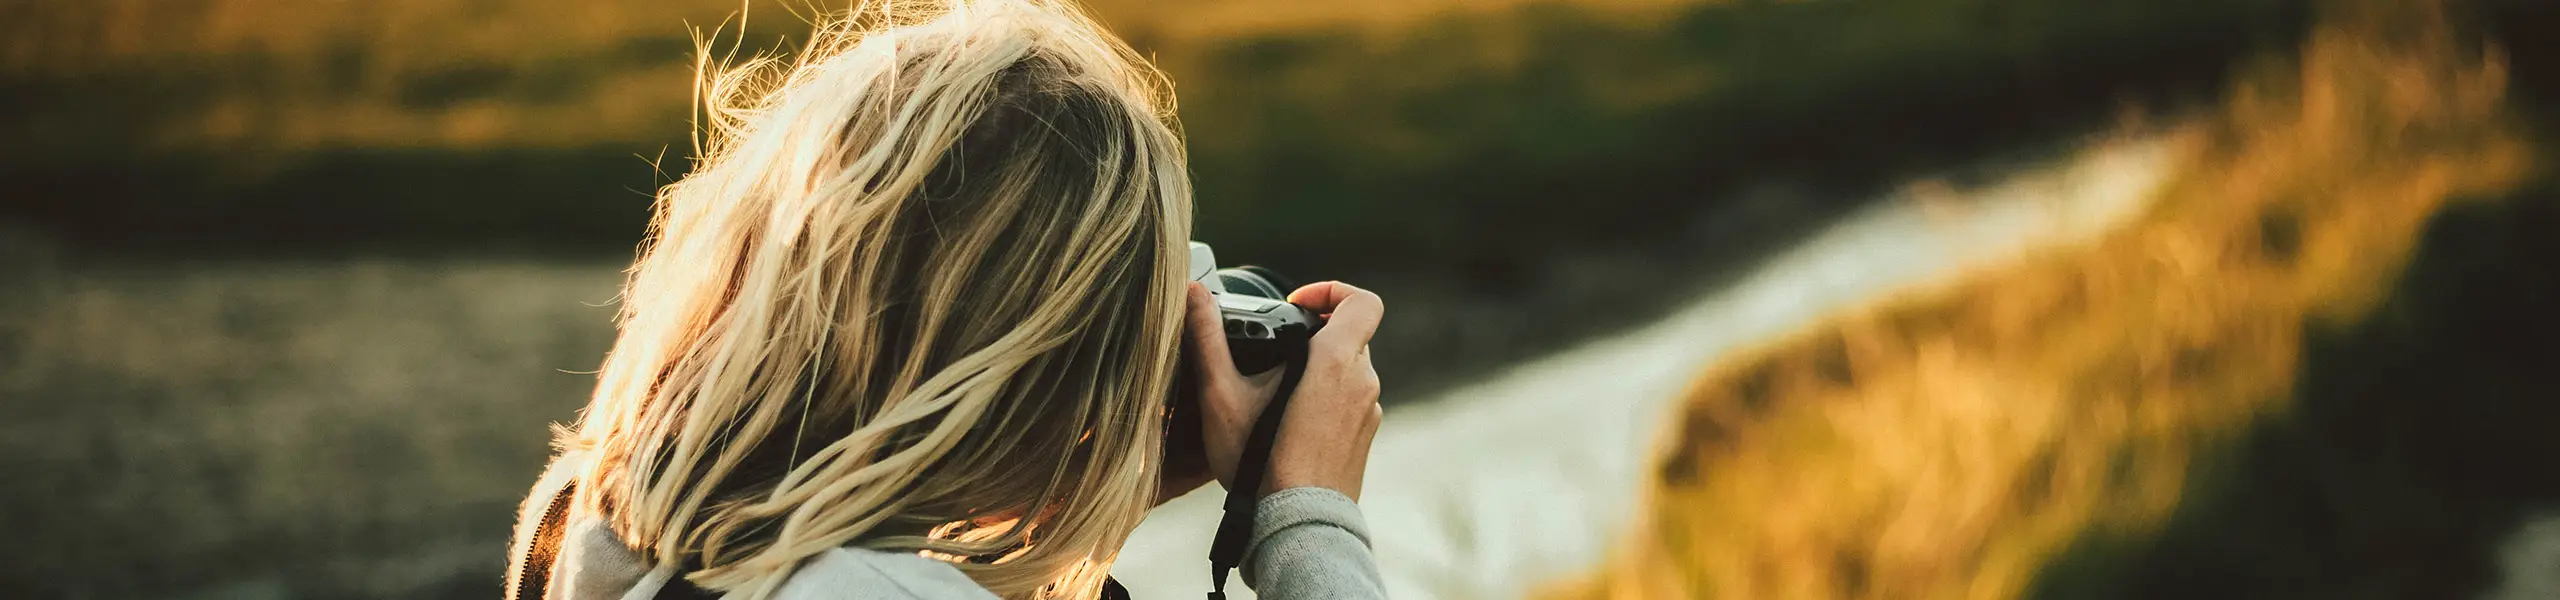 Frau fotografiert eine Landschaft